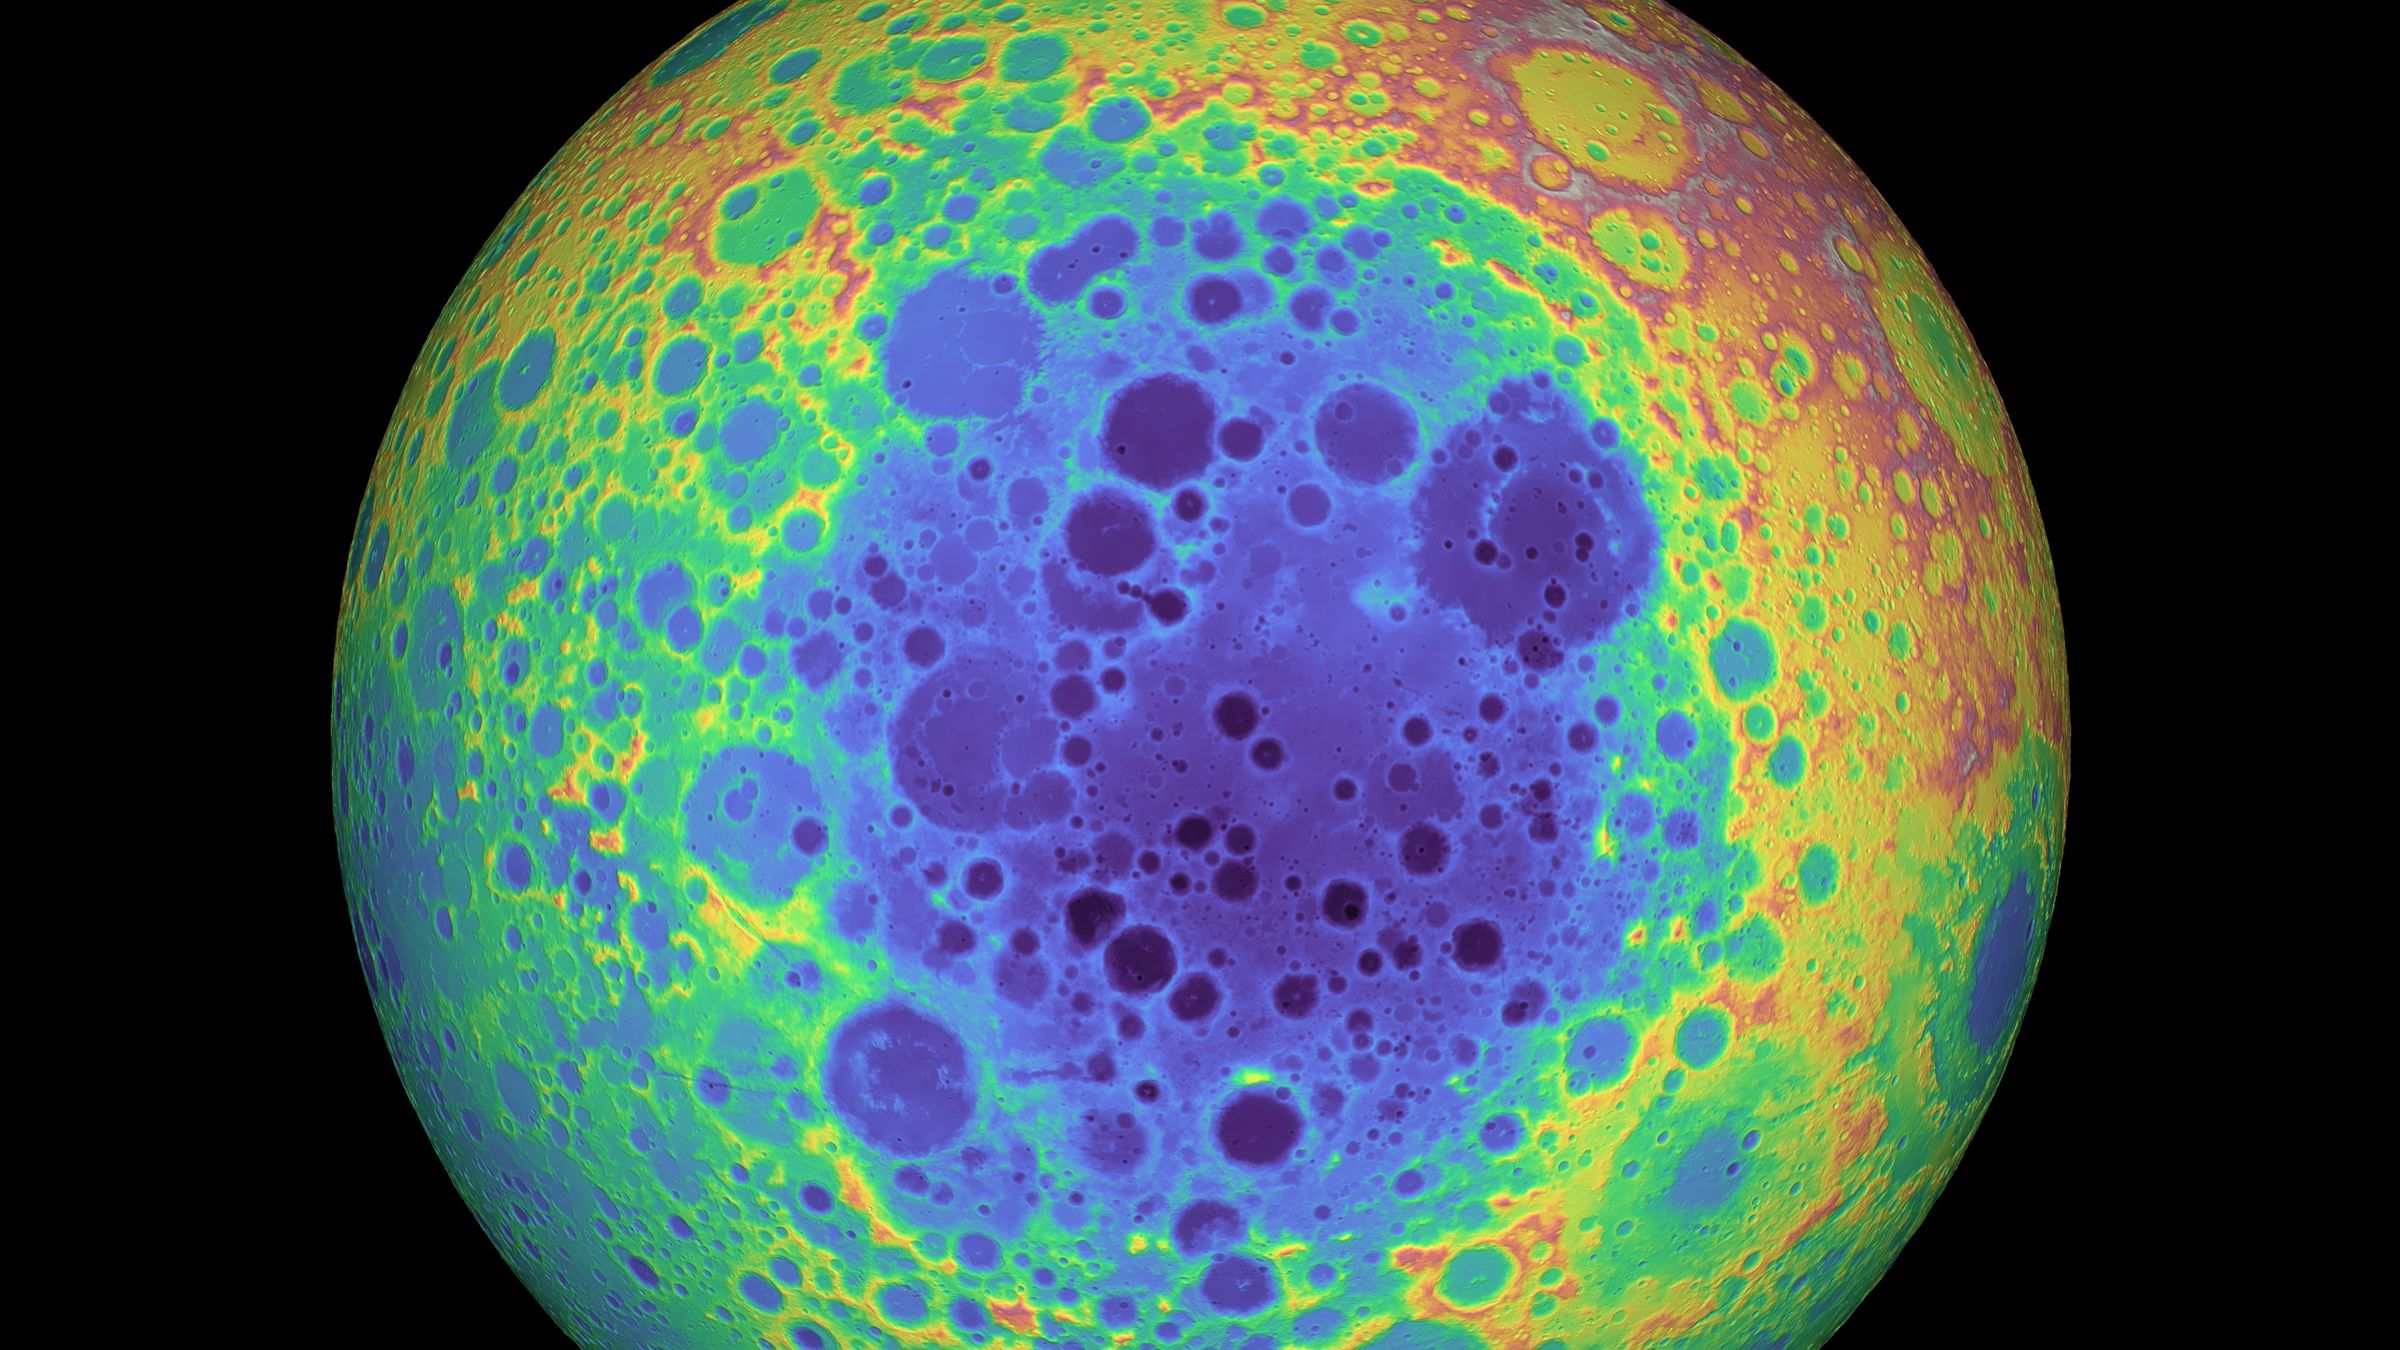 The South Pole-Aitken basin on the Moon